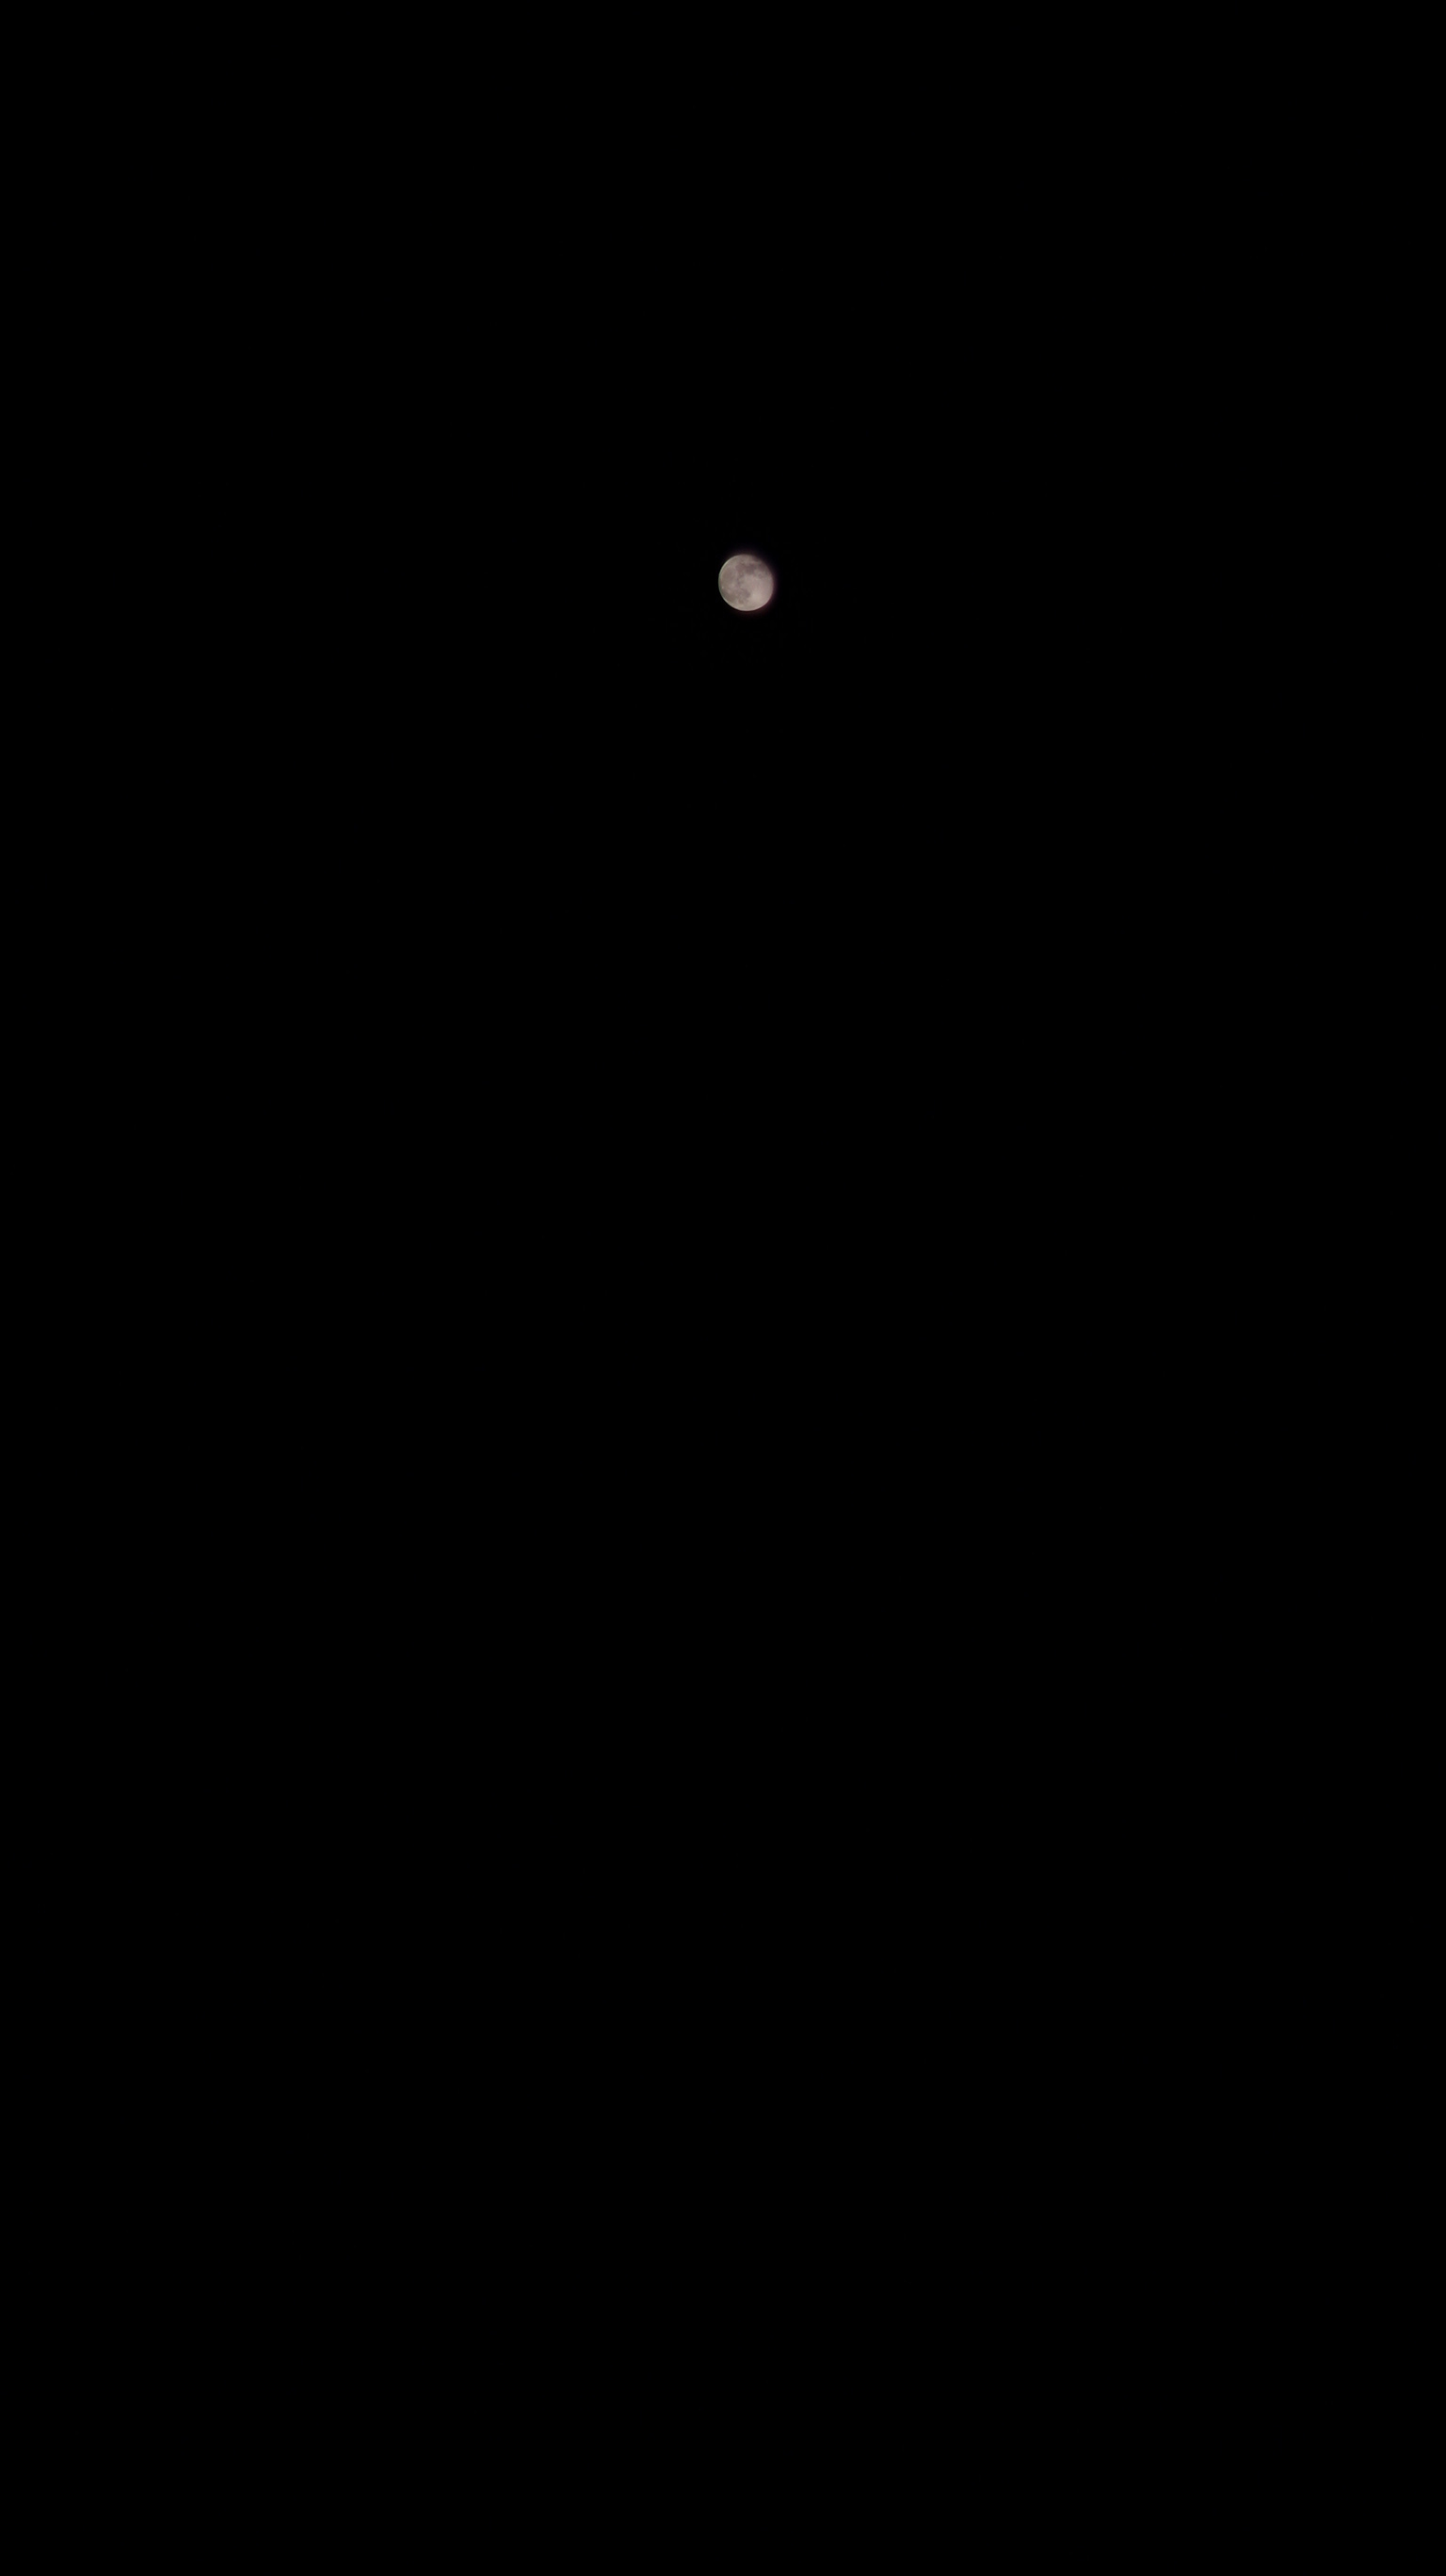 La Lune ce de dimanche 4 mars 2018 (DSC03323).JPG